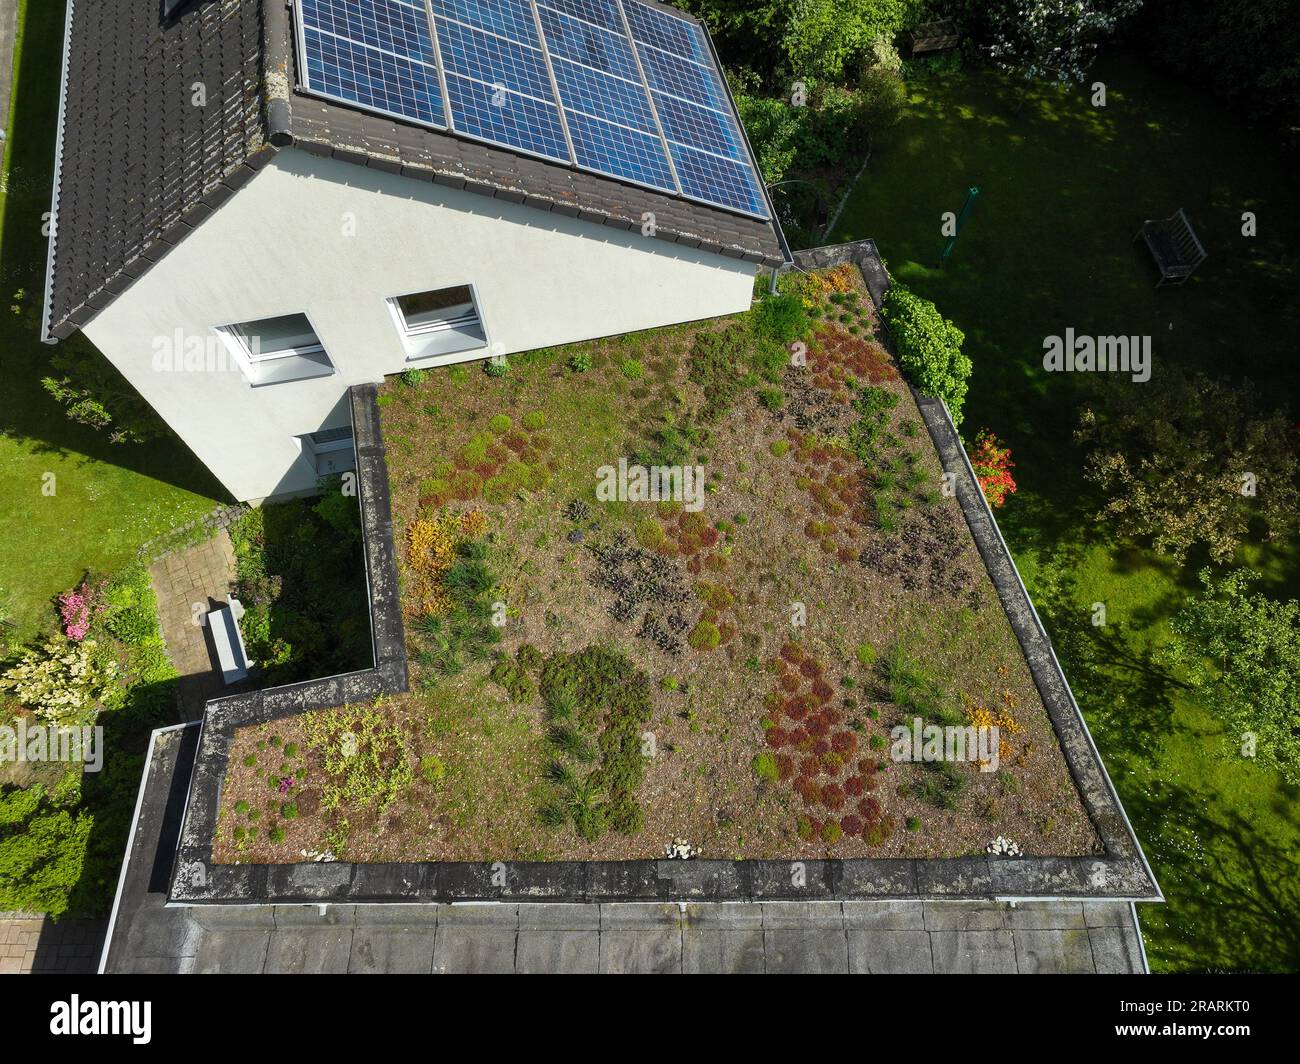 Muelheim an der Ruhr, Nordrhein-Westfalen, Deutschland - Flachdach mit grüner Dachgestaltung. Weitreichende Dachgrünung mit niedrig wachsenden Pflanzen, wie z. B. Gräser Stockfoto